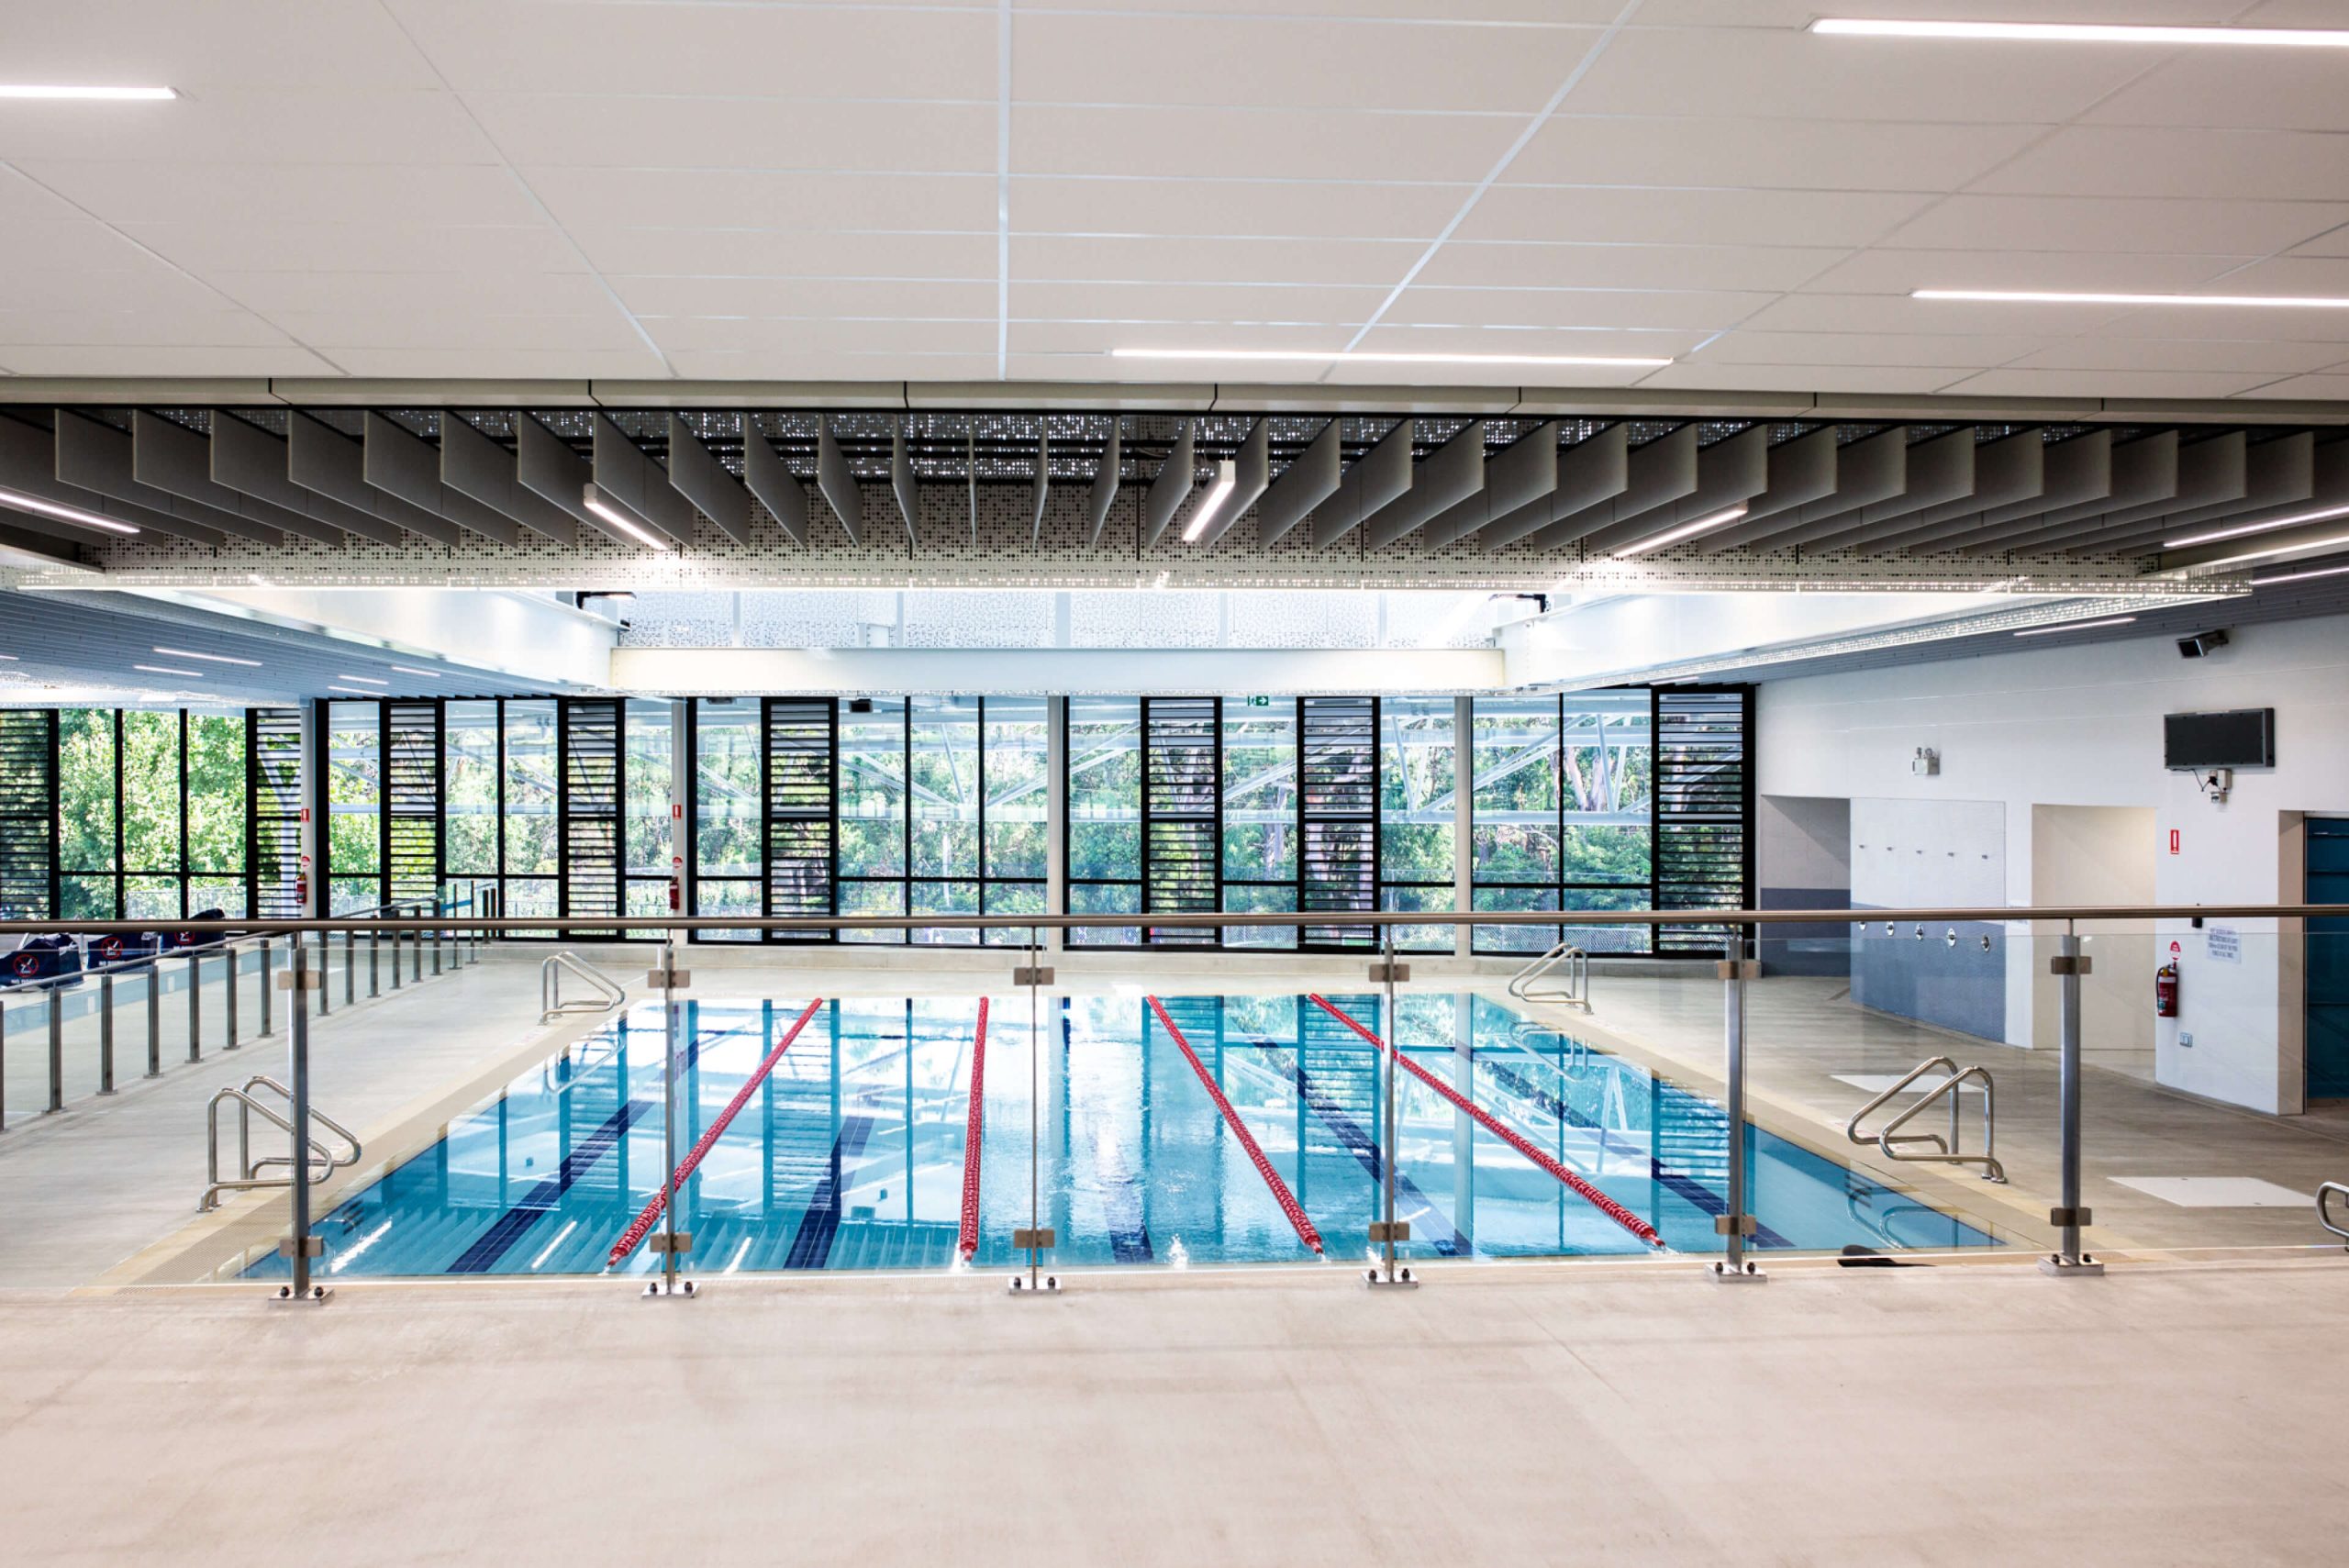 5 tara aquatic centre and sports precinct taylor construction education aquatic centre